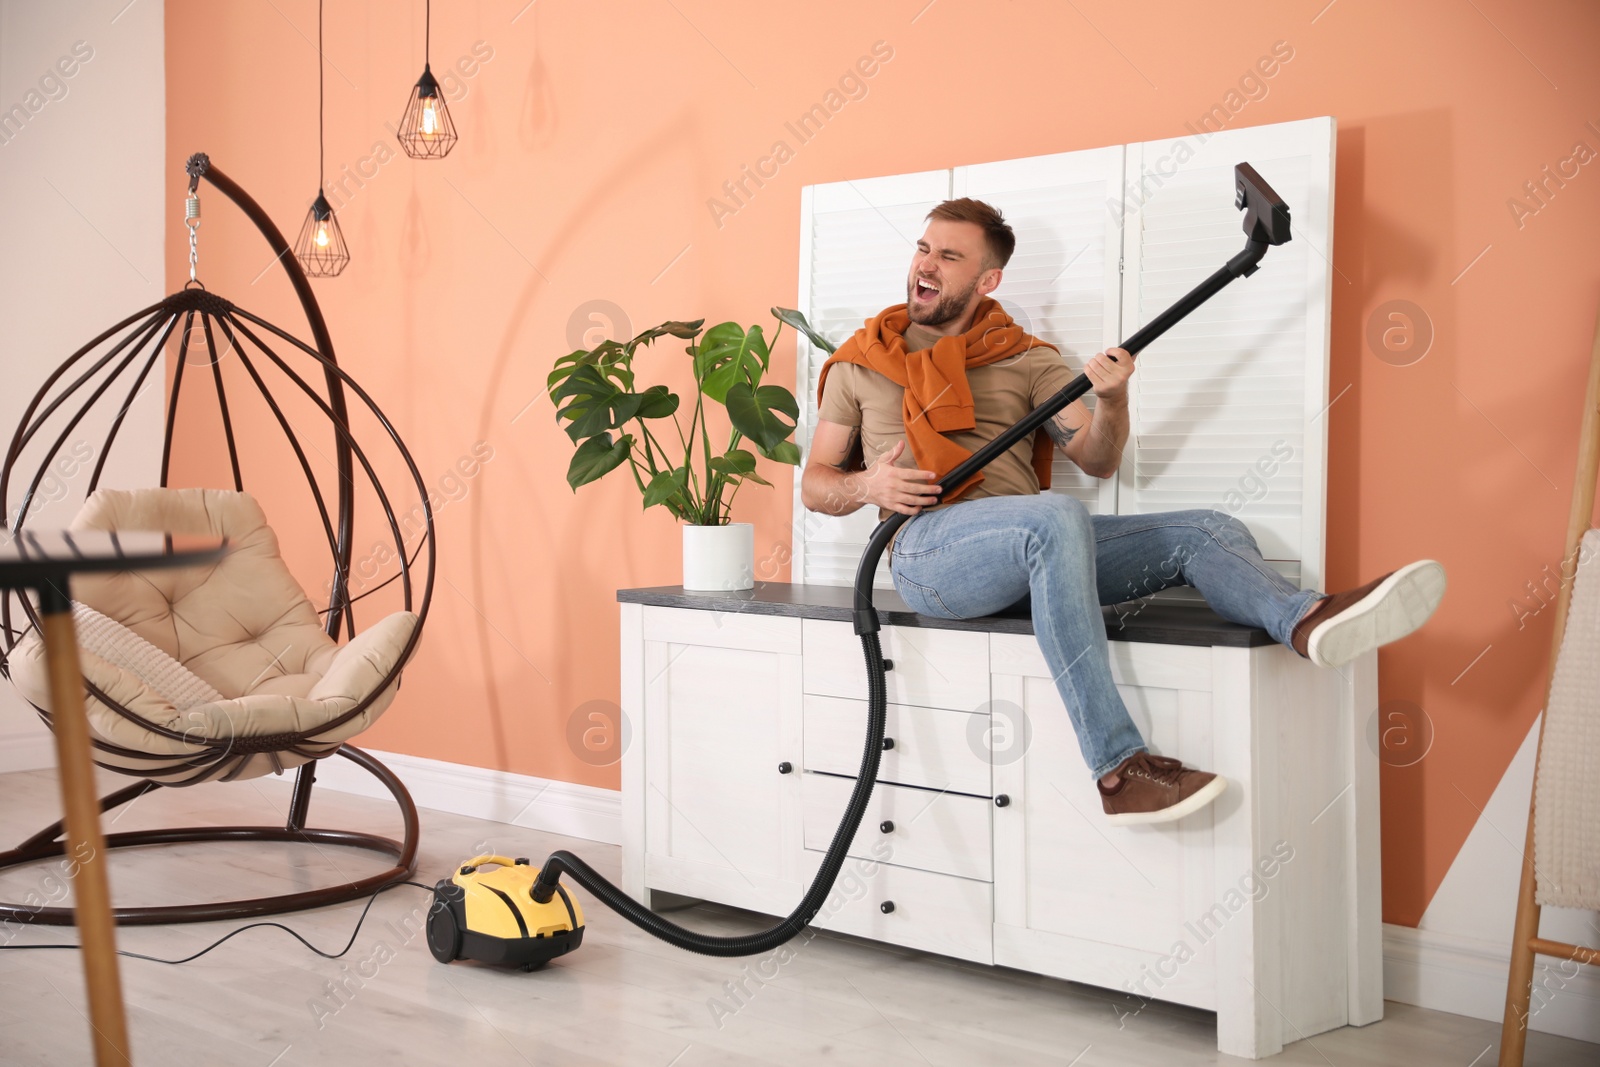 Photo of Young man having fun while vacuuming at home